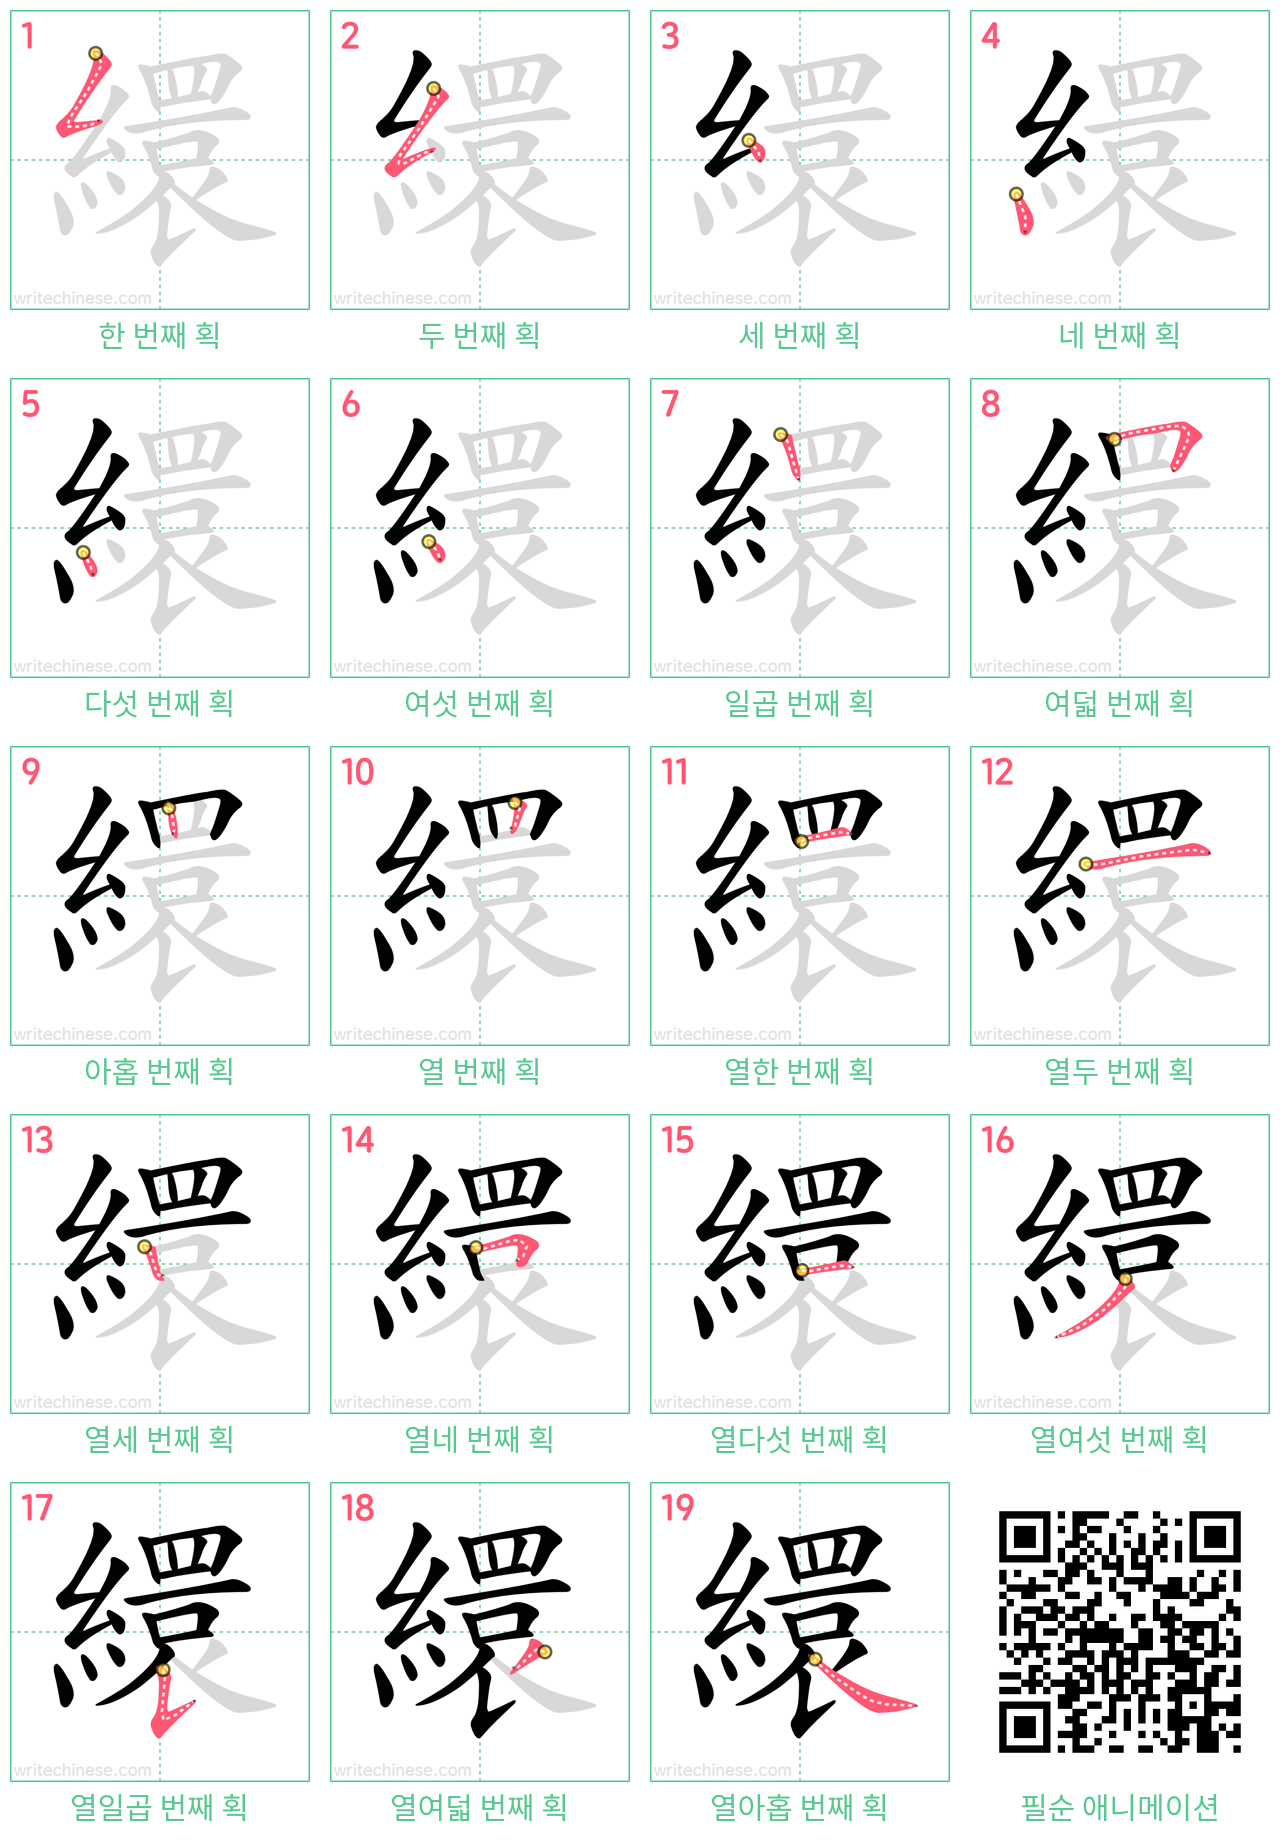 繯 step-by-step stroke order diagrams